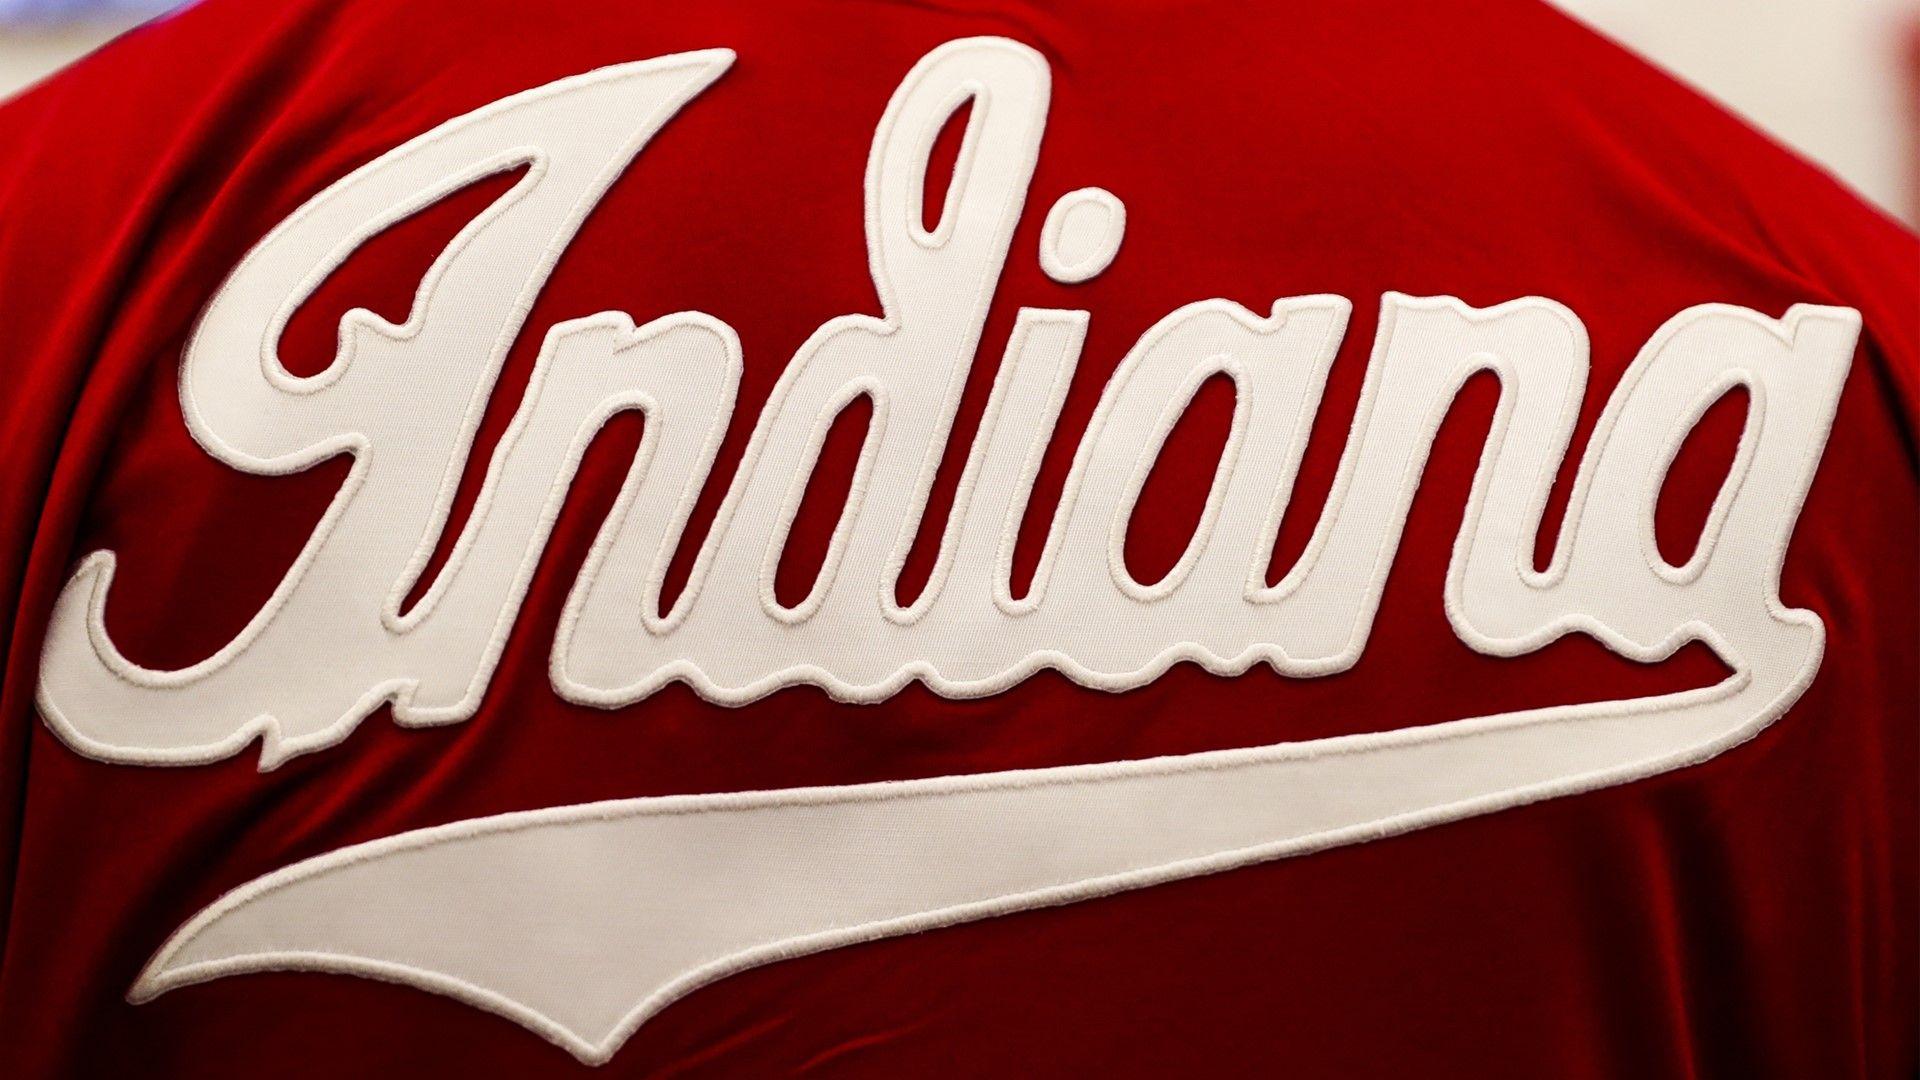 Indiana University Basketball Logo - Indiana University Athletics Unveils First-Ever IU Athletics Brand ...